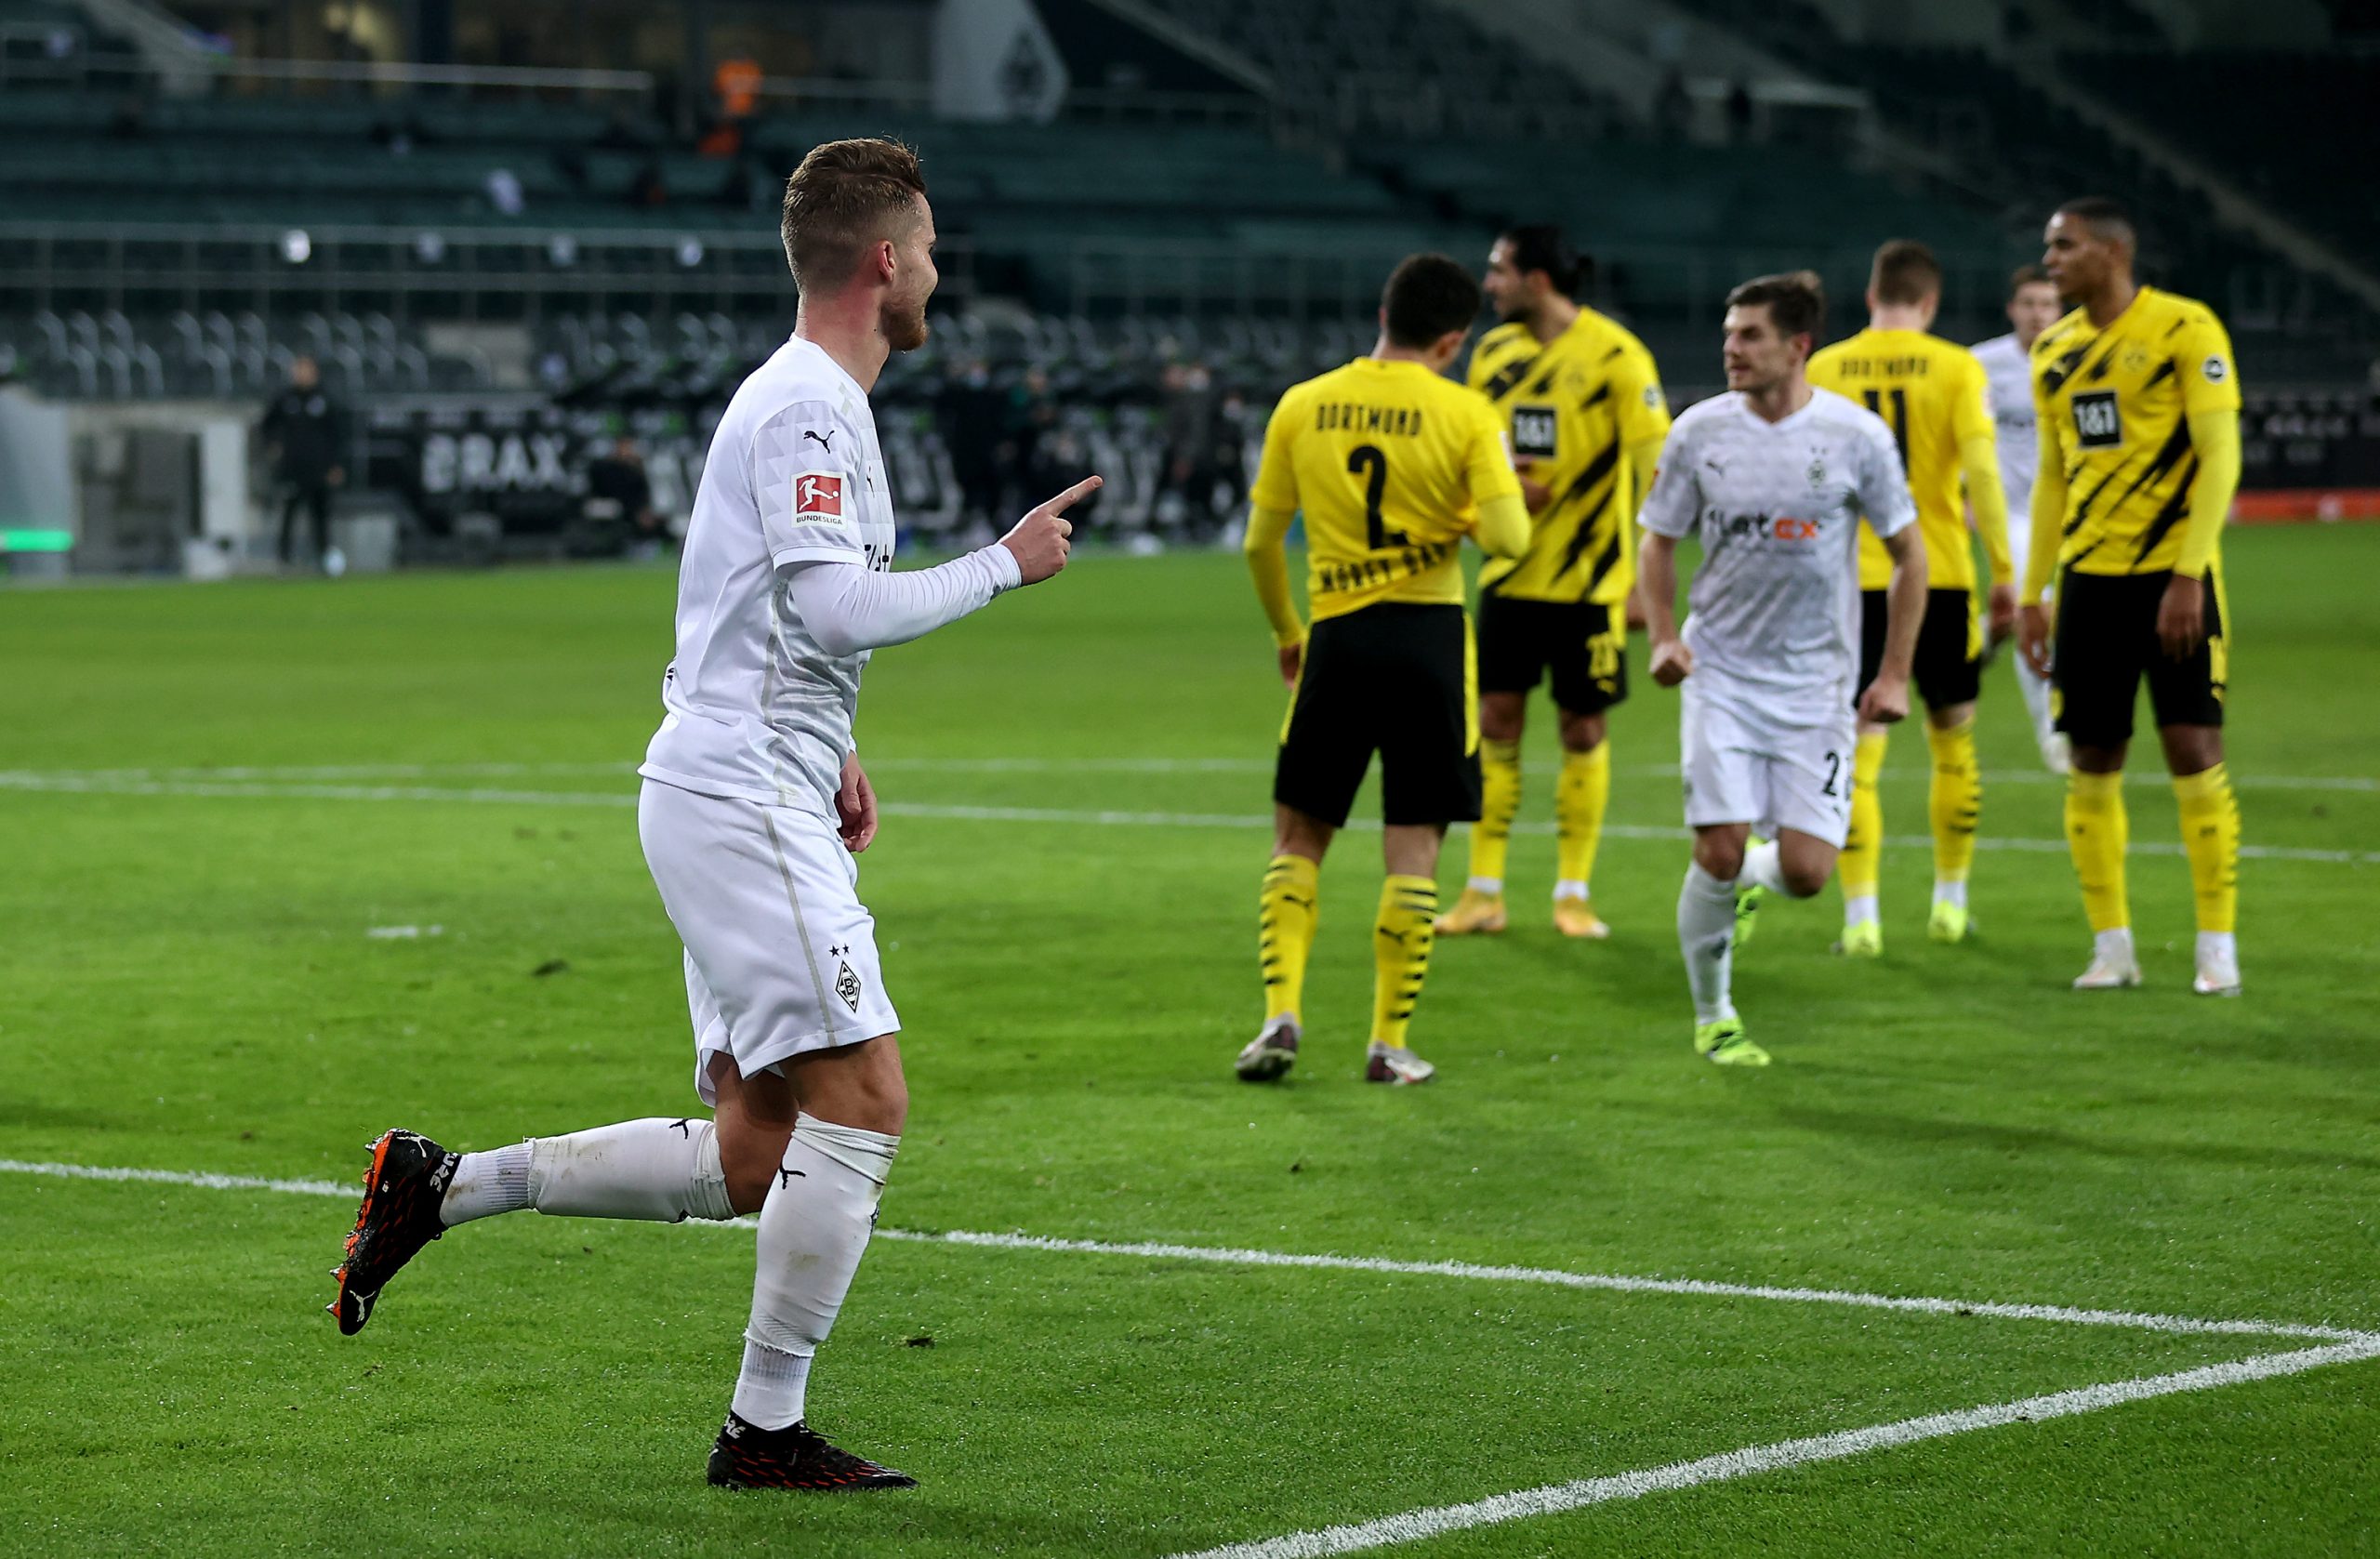 No duelo dos Borussias, Mönchengladbach vence o Dortmund em jogo de seis gols (Foto: Lars Baron/Getty Images)